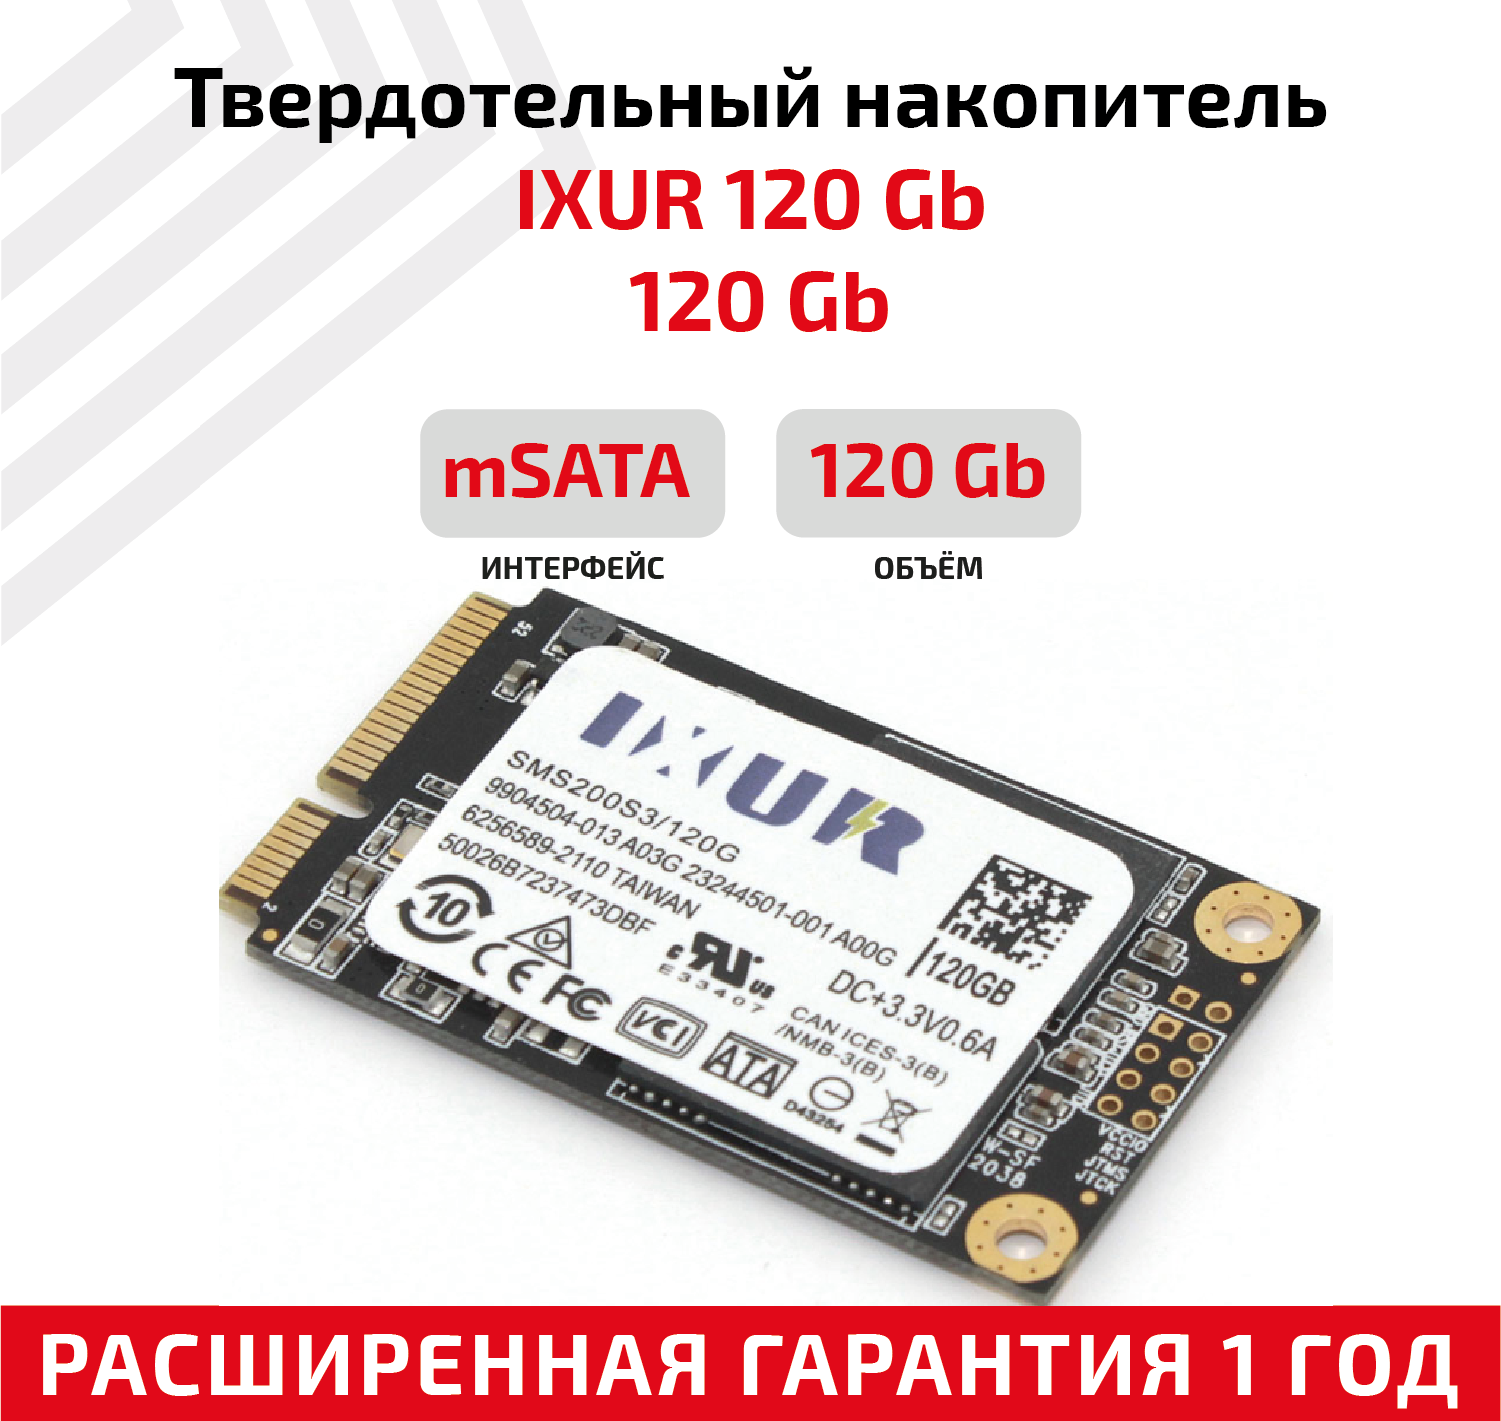 Жесткий диск, твердотелый накопитель, внутренняя память SSD mSATA 120 Gb IXUR